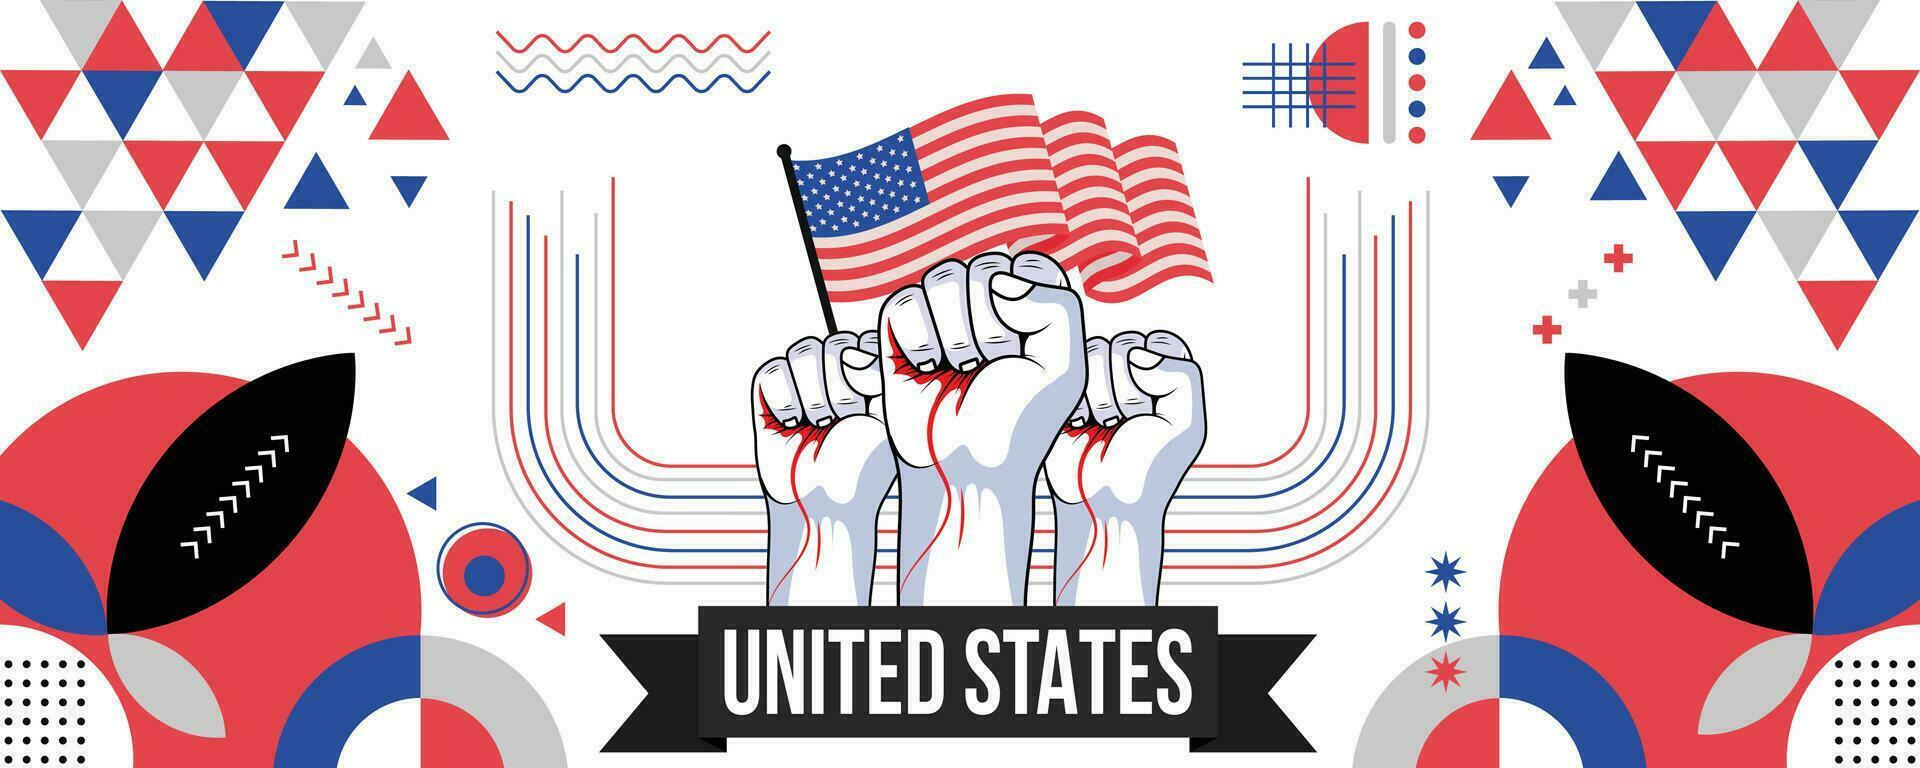 Verenigde Staten van Amerika nationaal of onafhankelijkheid dag banier voor land viering. vlag van Verenigde staten met verheven vuisten. modern retro ontwerp met typorgaphy abstract meetkundig pictogrammen. vector illustratie.